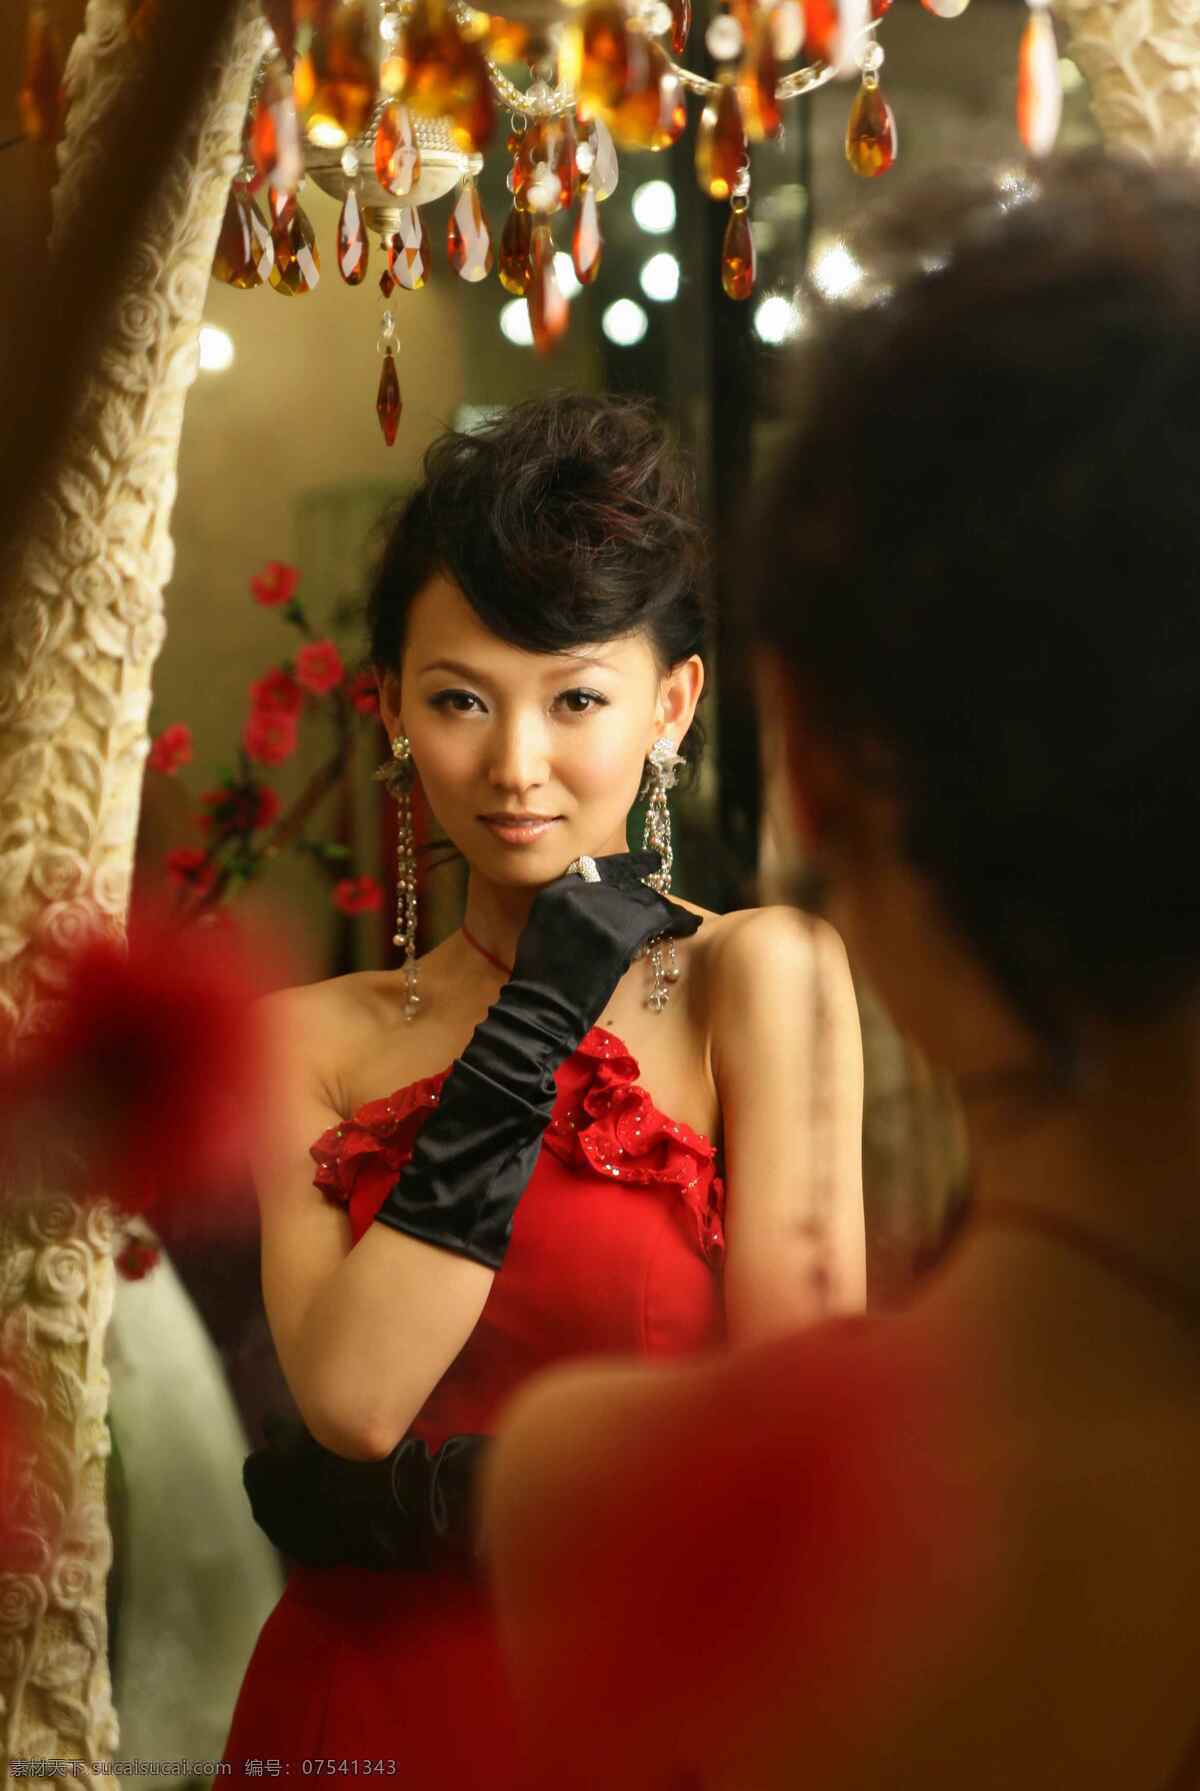 亚丽 红色晚礼服 写真 浙江电视台 频道 美女主持 明星偶像 人物图库